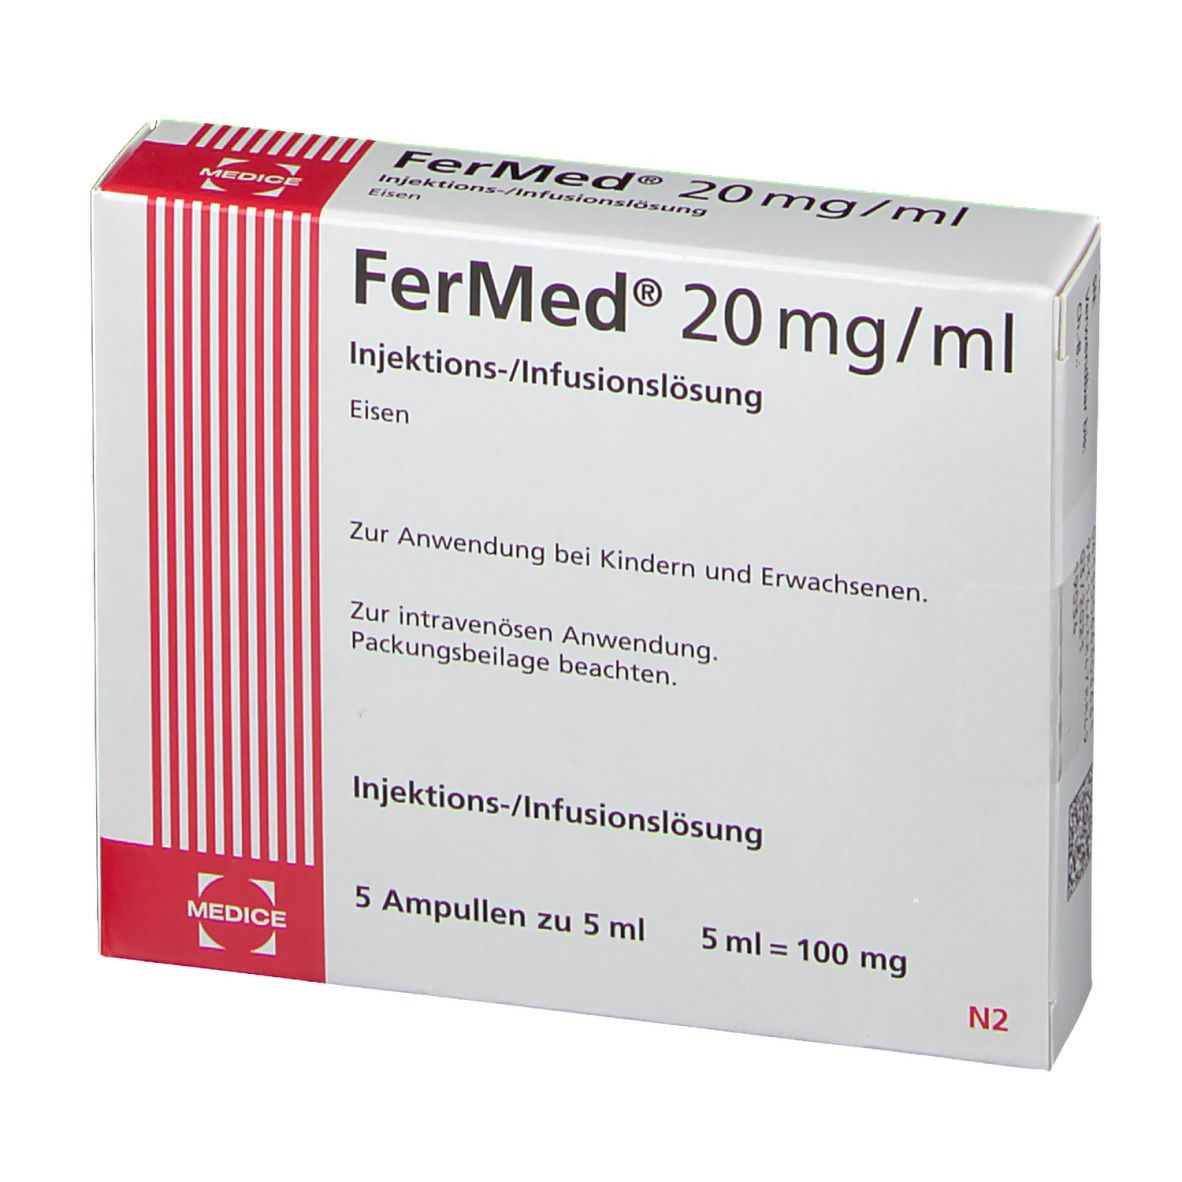 FerMed® 20 mg/ml